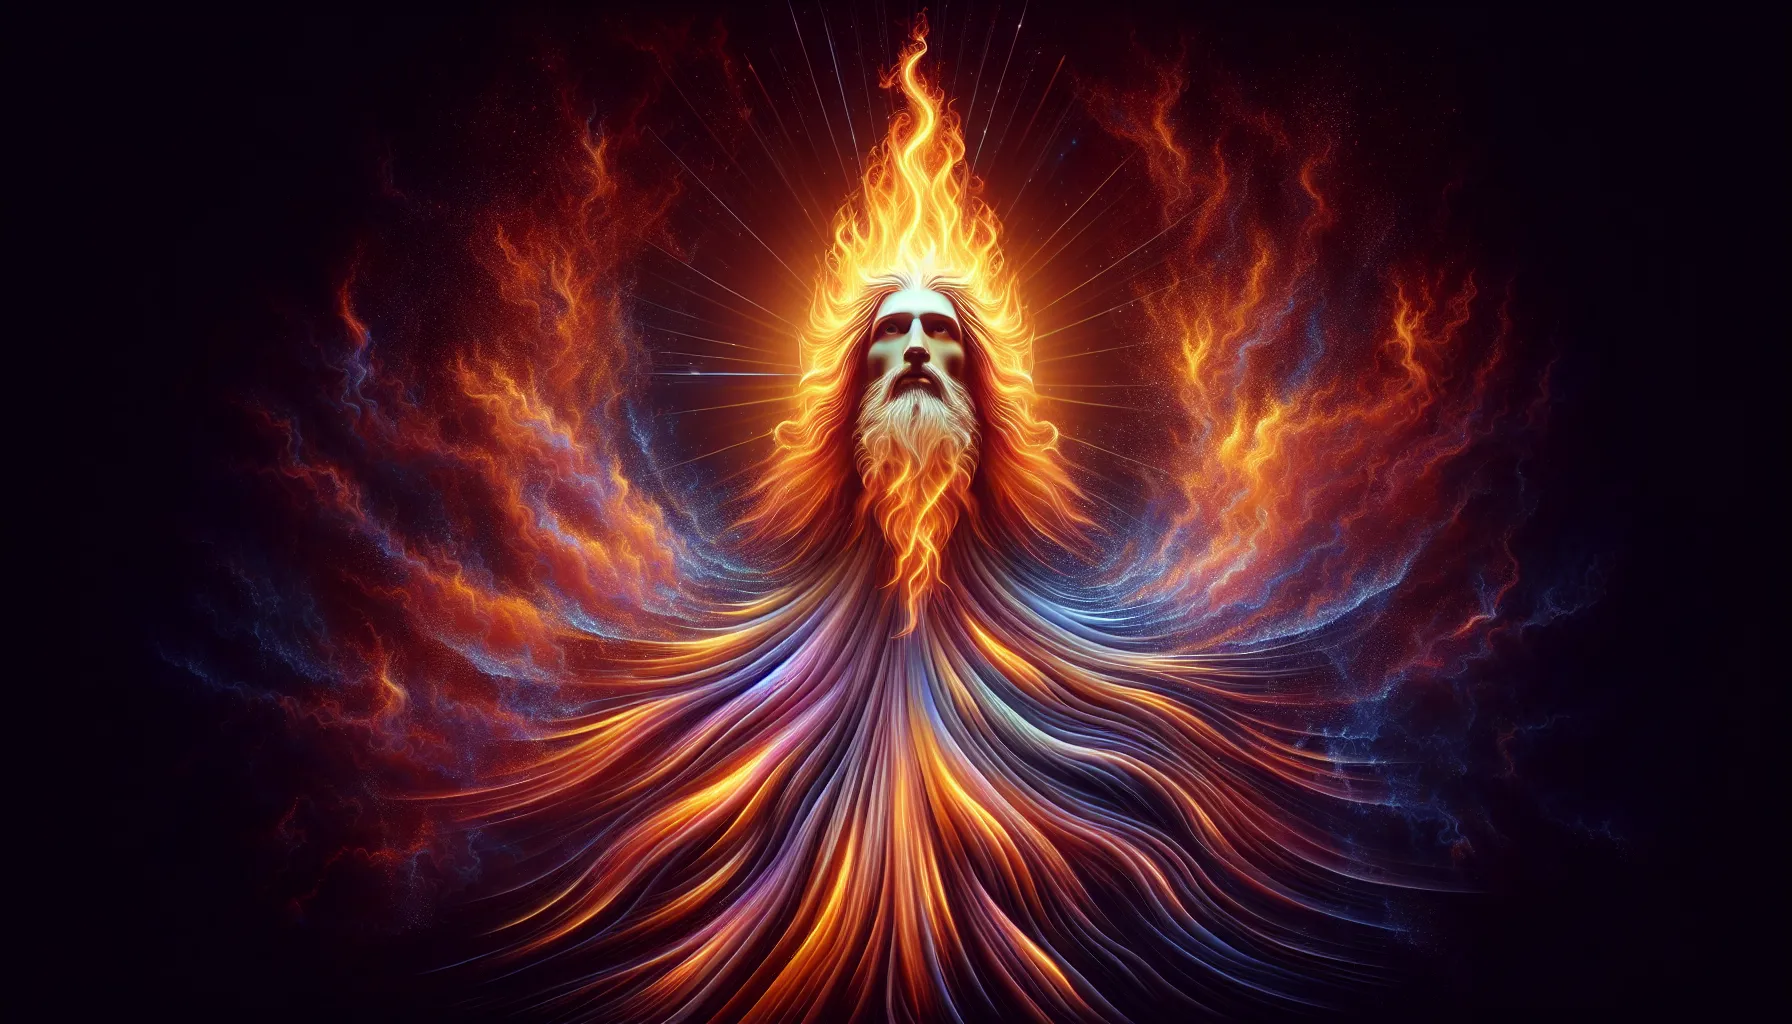 Imagen de una representación artística de Dios como una llama ardiente